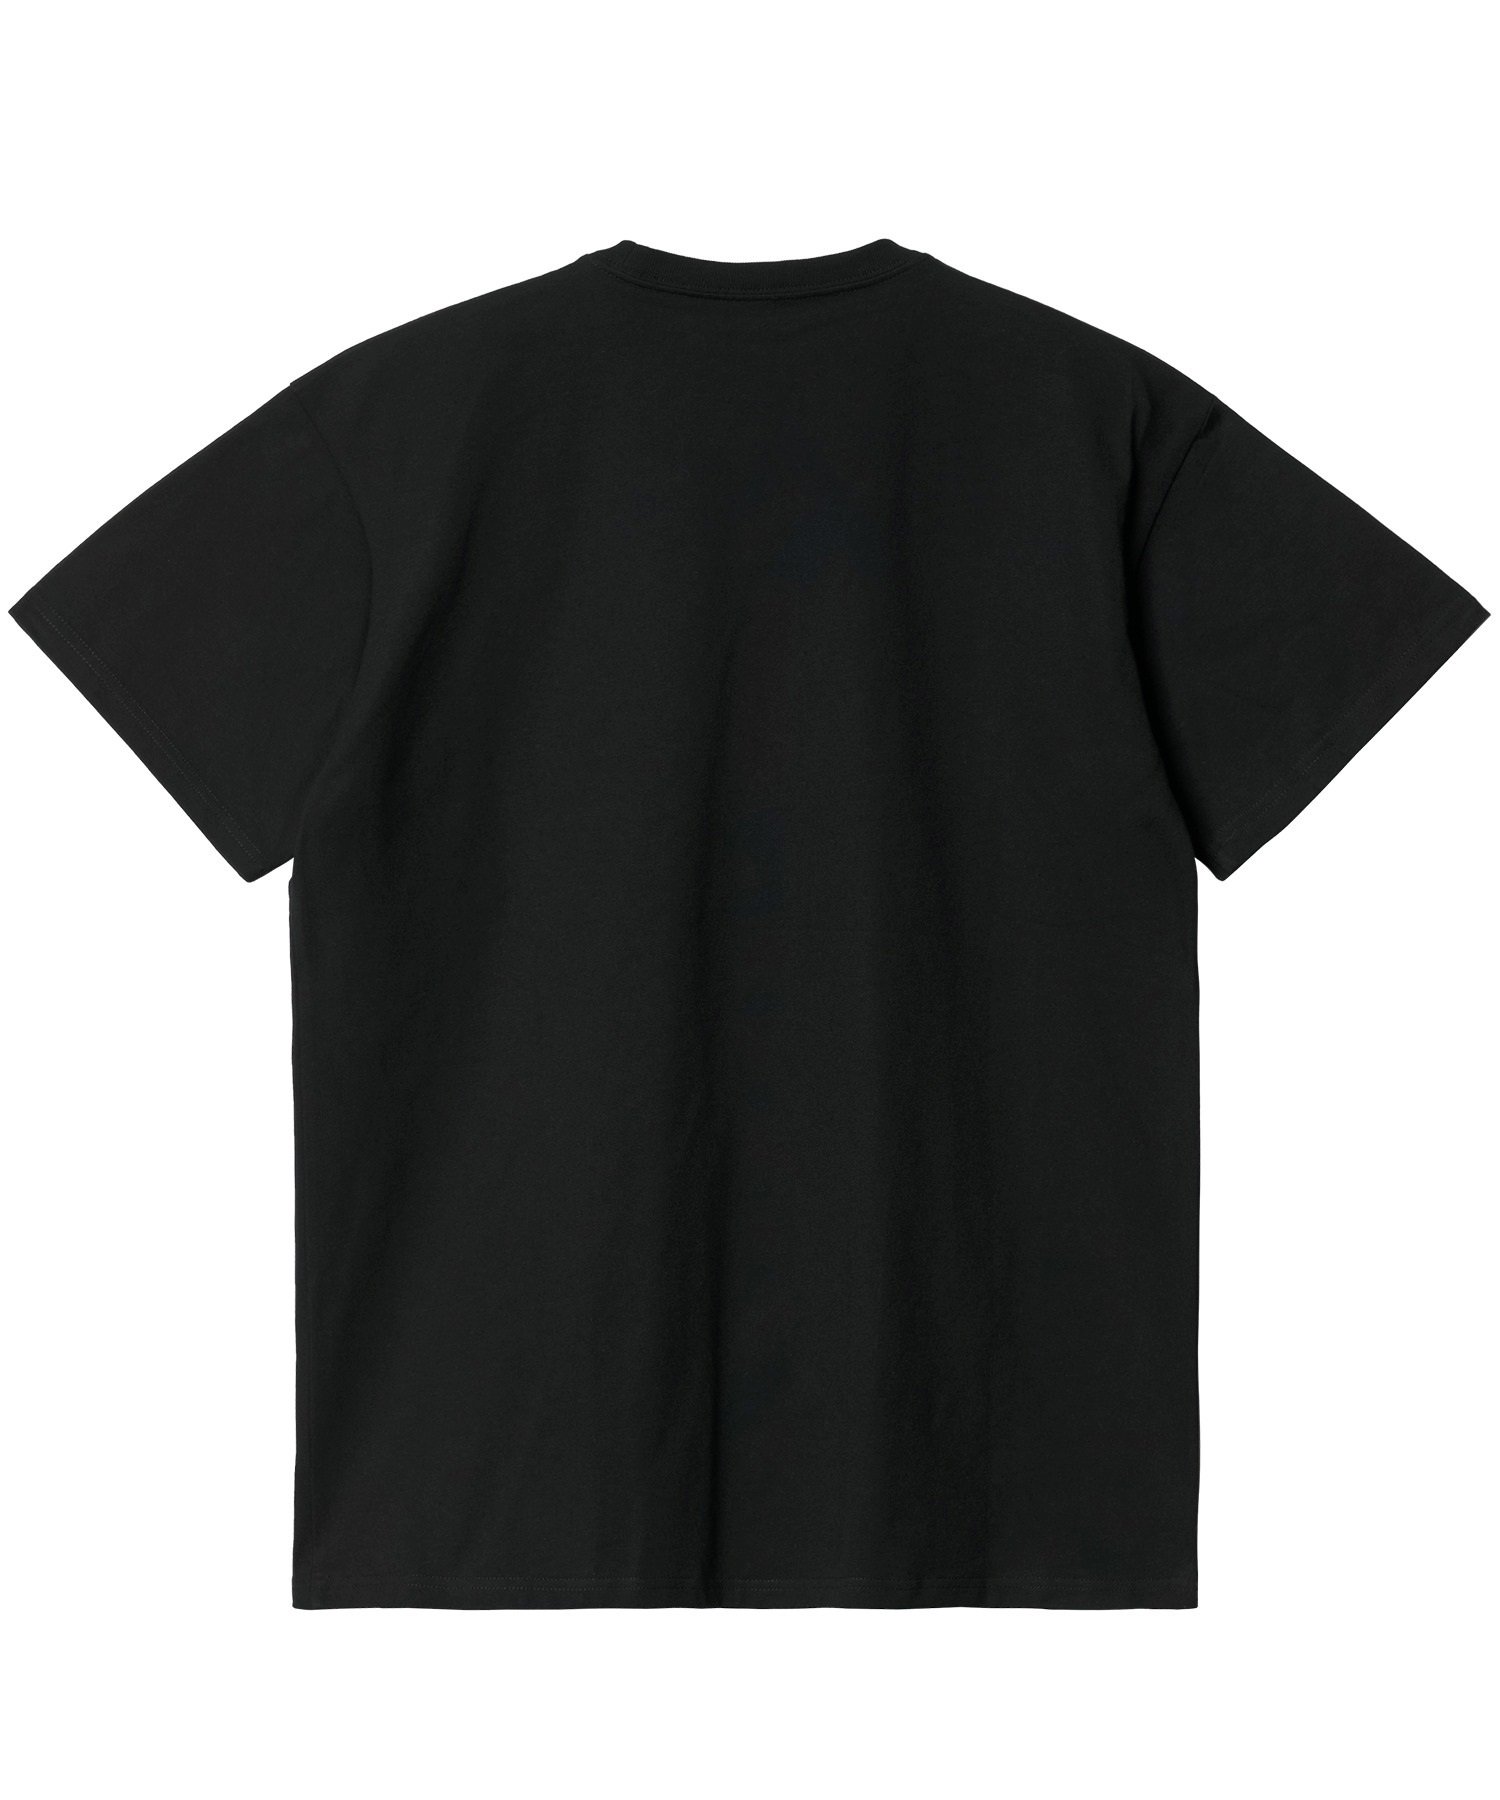 Carhartt カーハート S S CHASE T-SHIRT ルーズシルエット メンズ 半袖 Tシャツ I026391 BK GD(BK/GD-M)